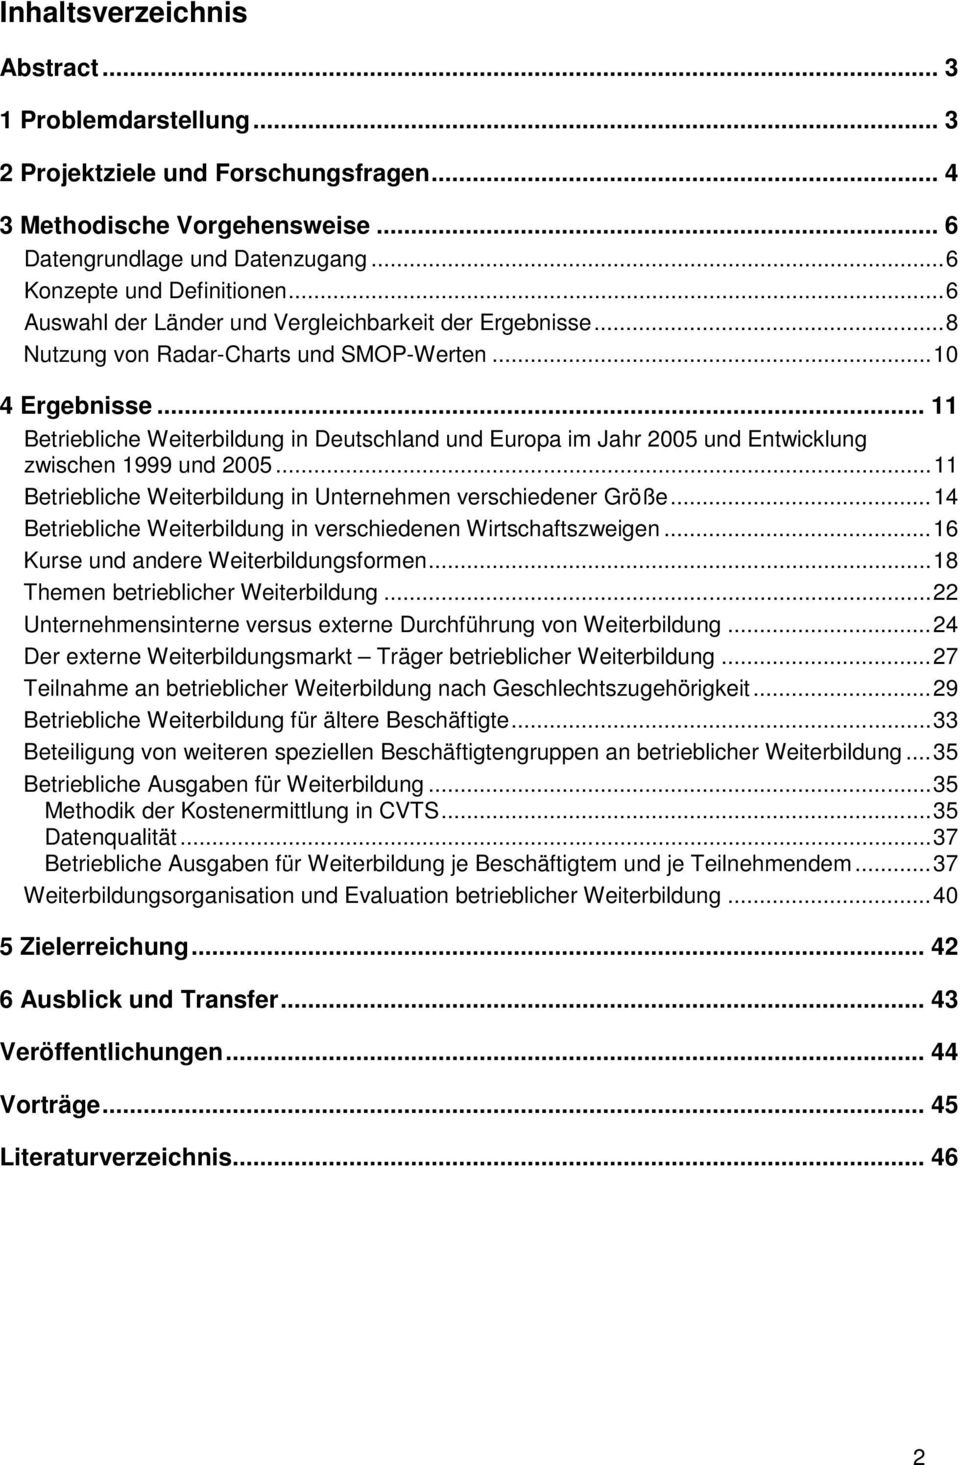 .. 11 Betriebliche Weiterbildung in Deutschland und Europa im Jahr 2005 und Entwicklung zwischen 1999 und 2005... 11 Betriebliche Weiterbildung in Unternehmen verschiedener Größe.